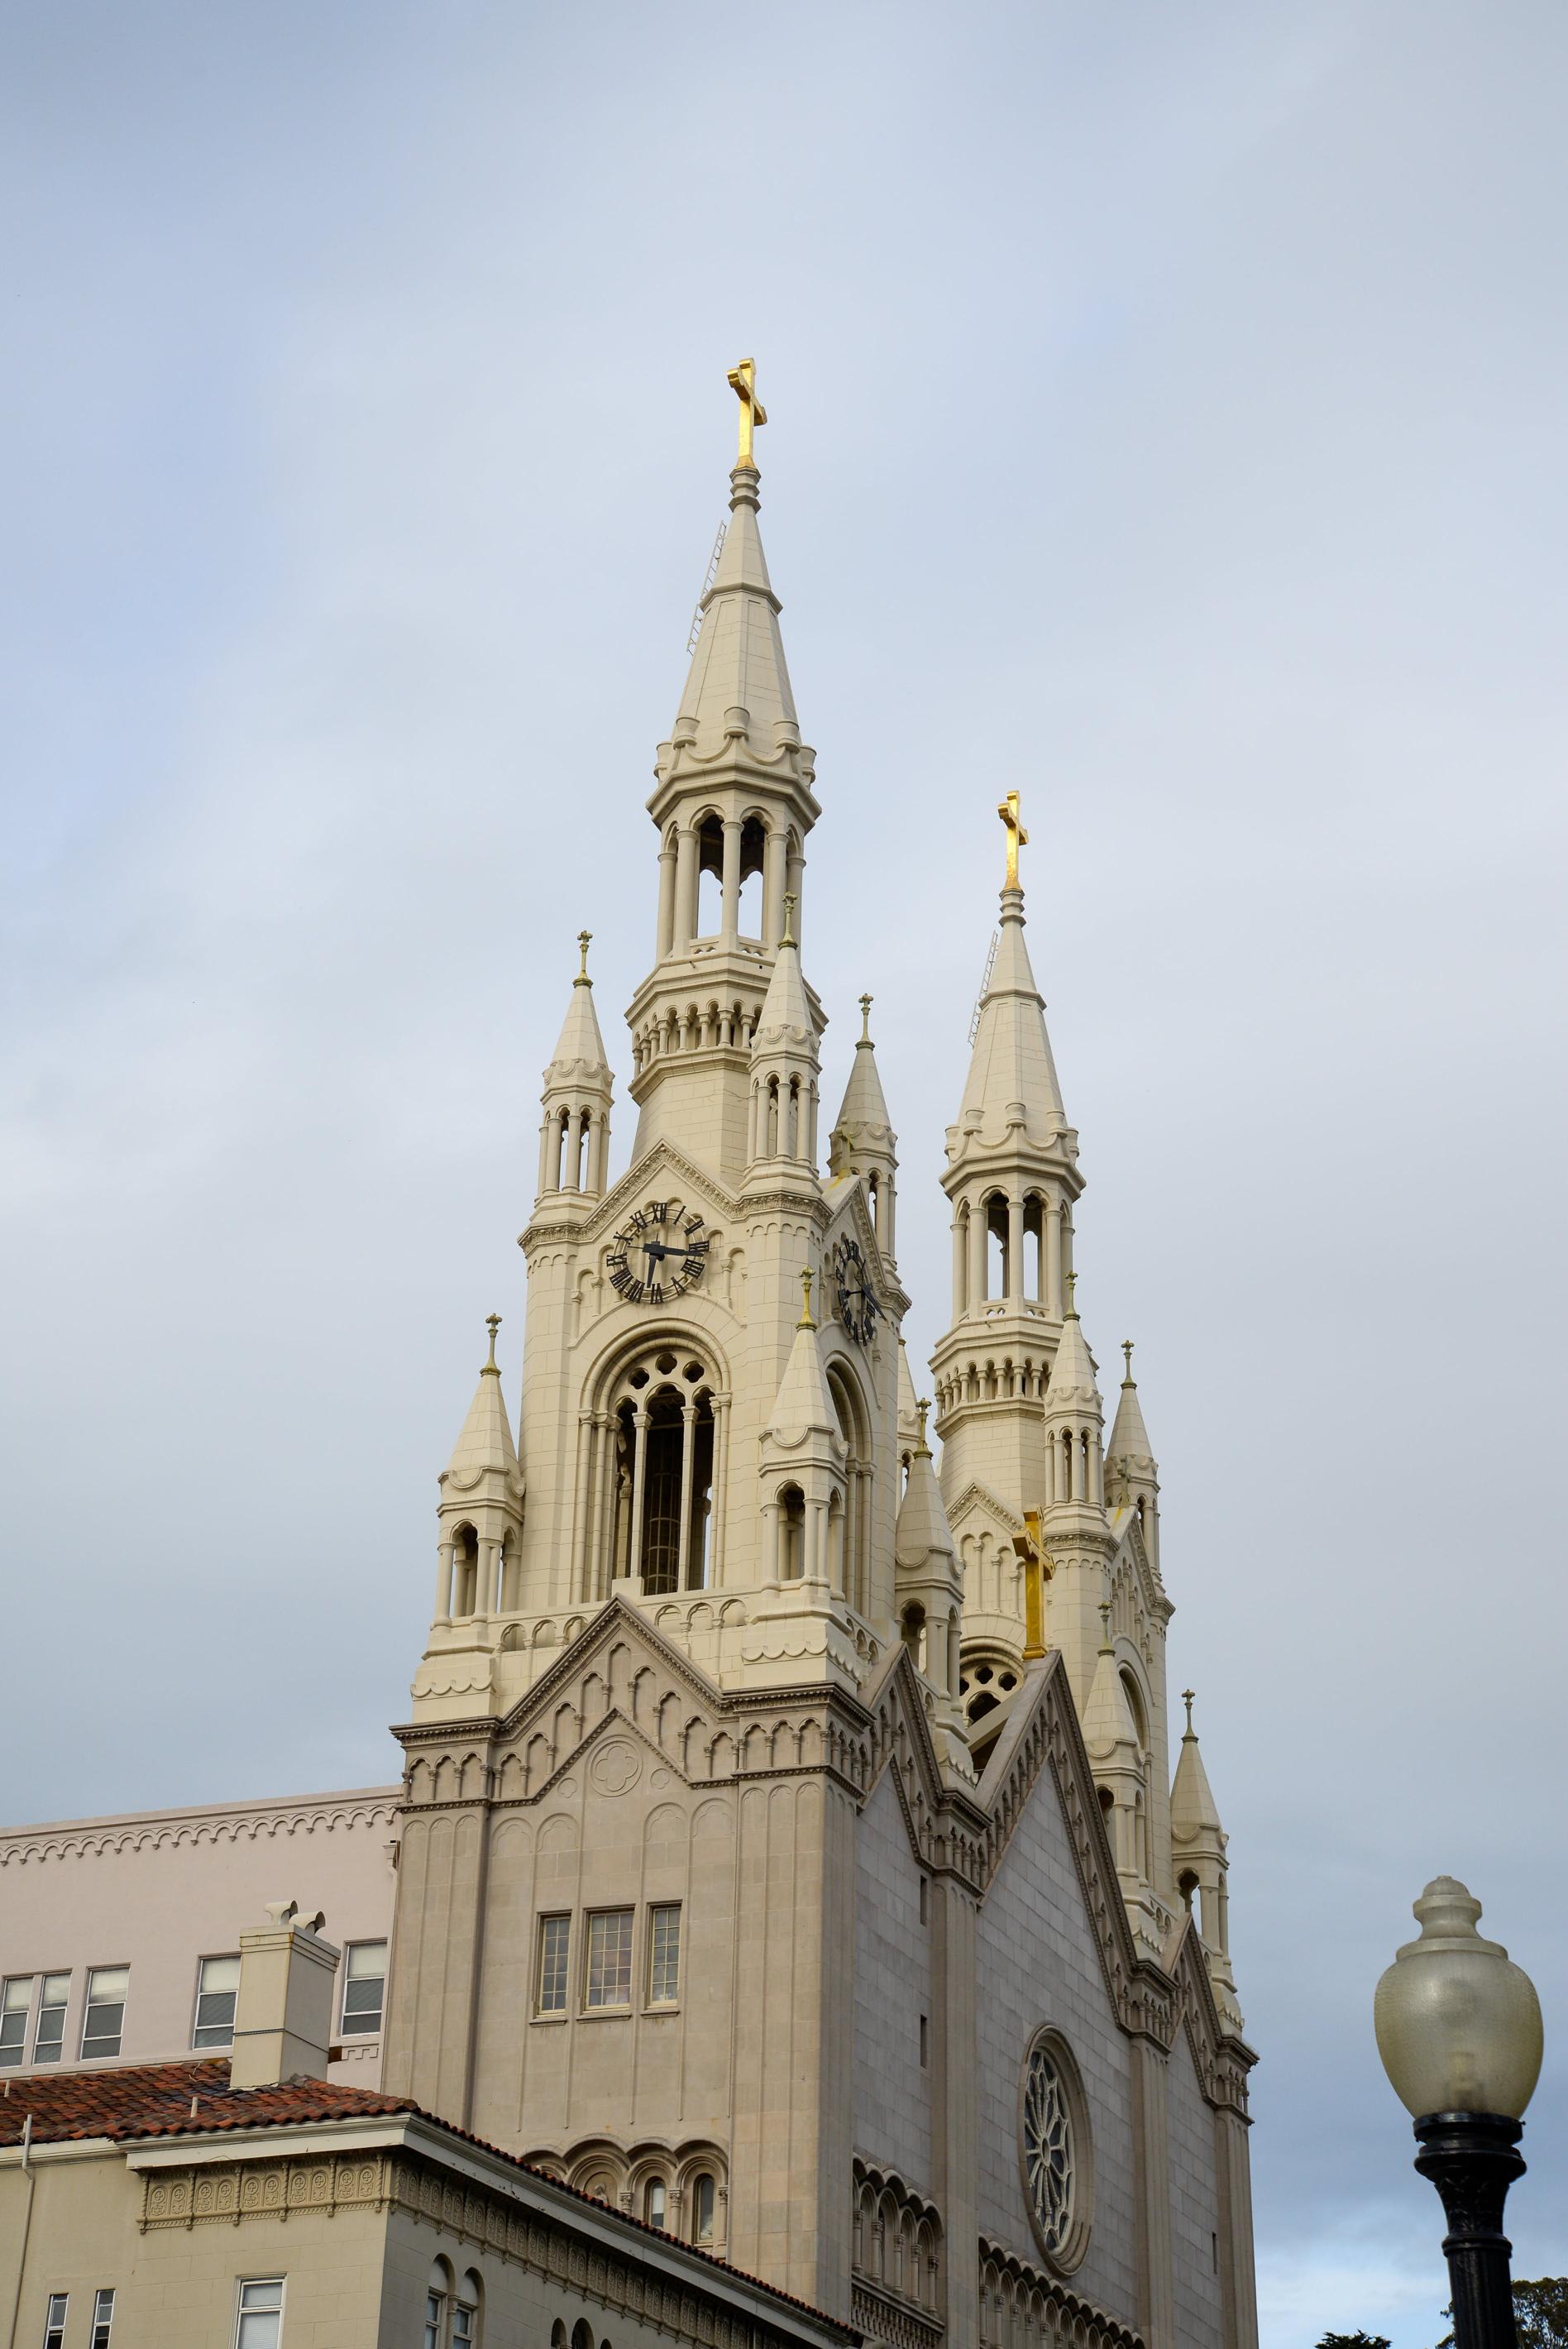 Gotyckie perły legnicy w malarstwie: kościół świętych piotra i pawła na obrazach